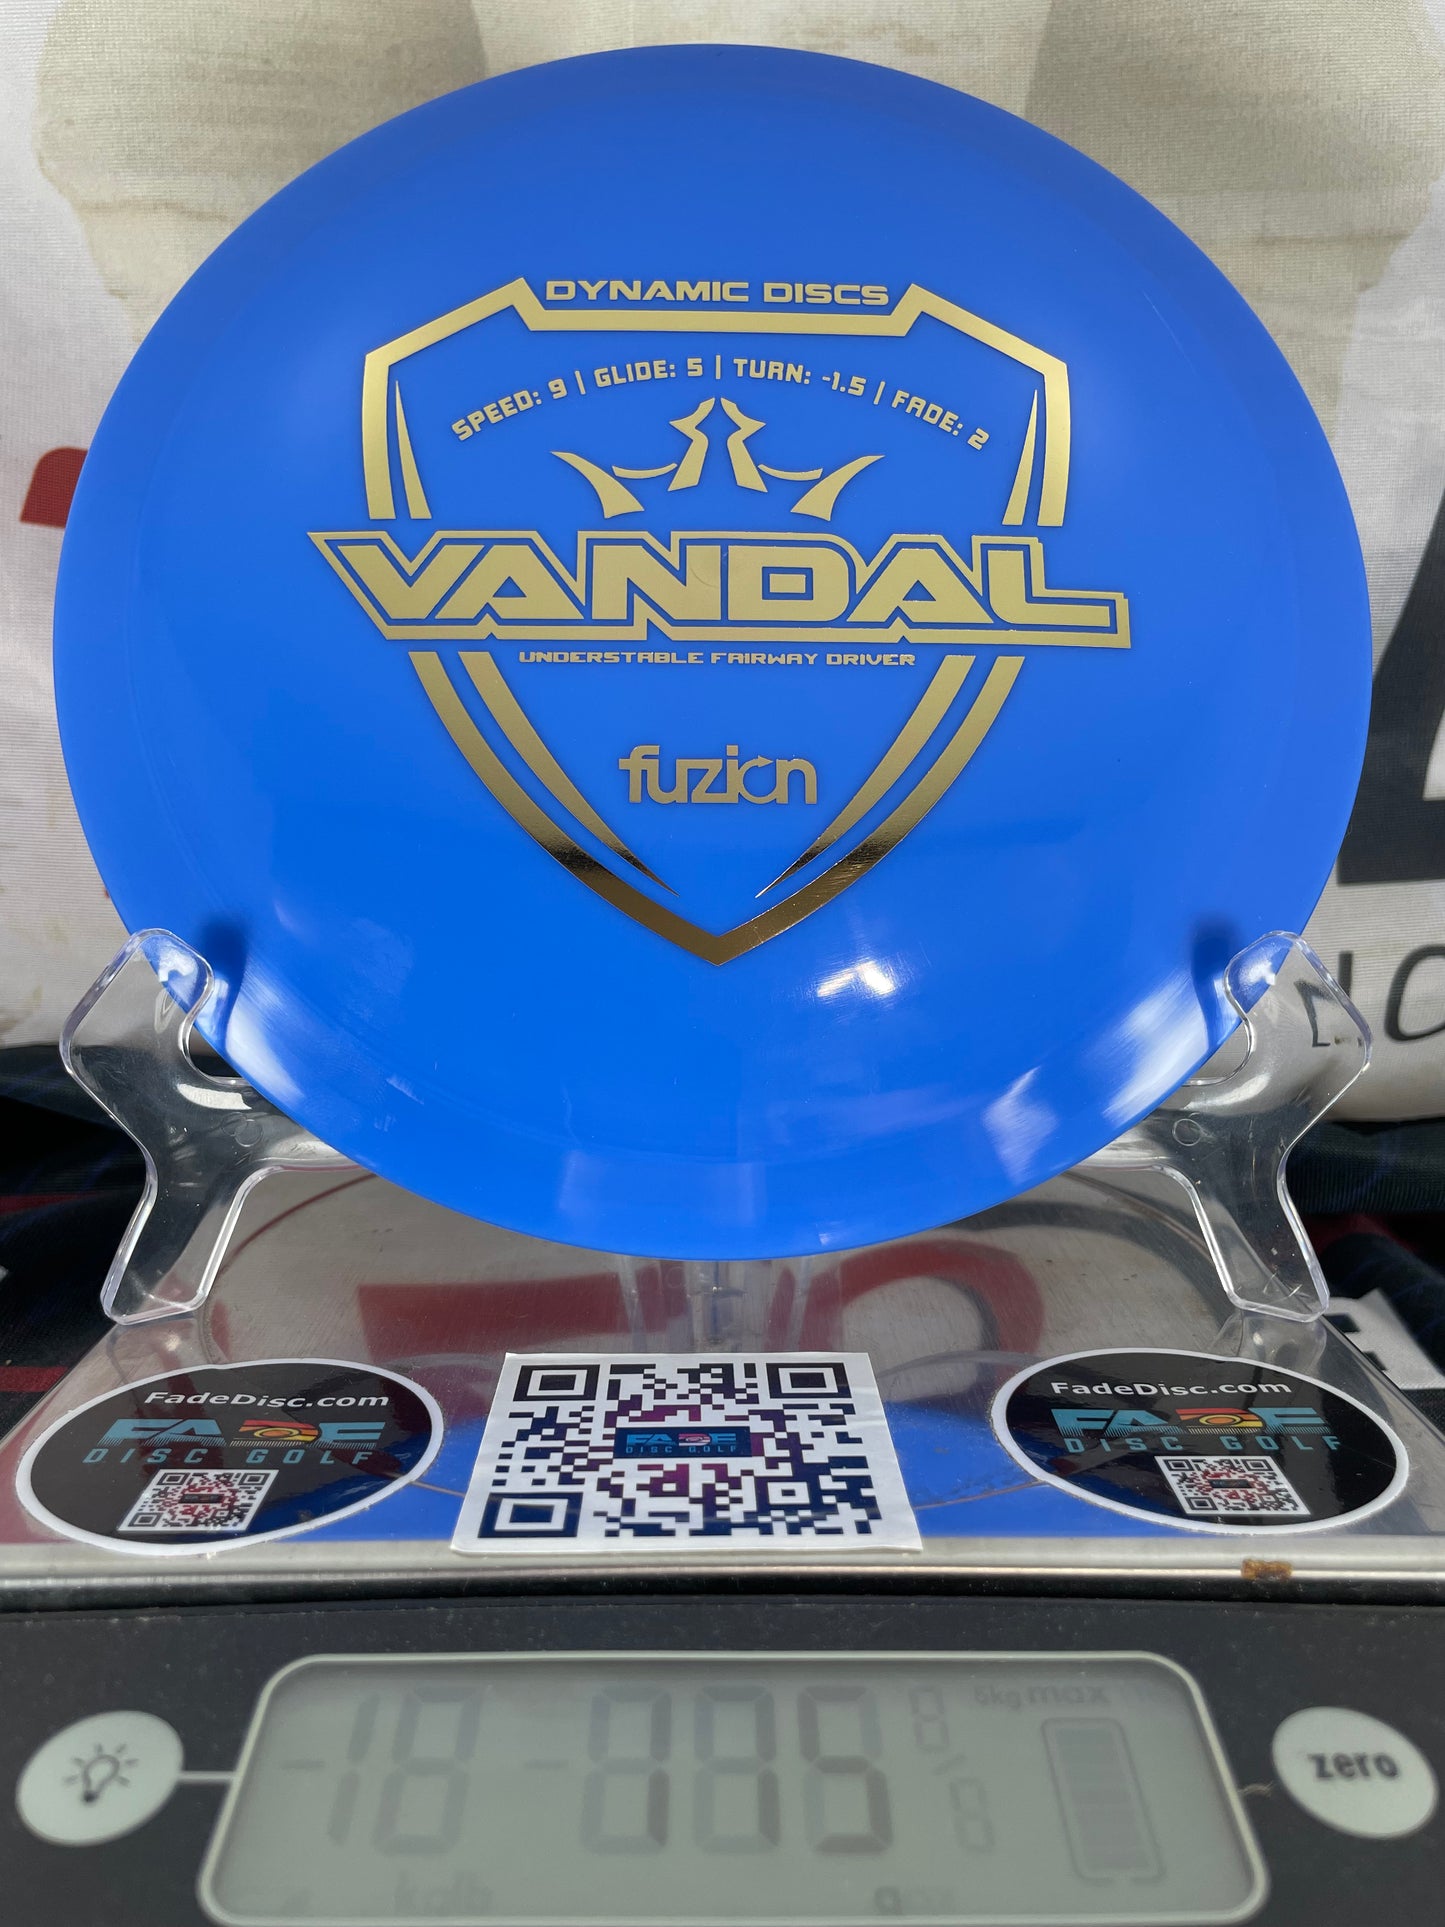 Dynamic Discs Vandal Fuzion 175g Blue w/ Gold Foil Distance Driver